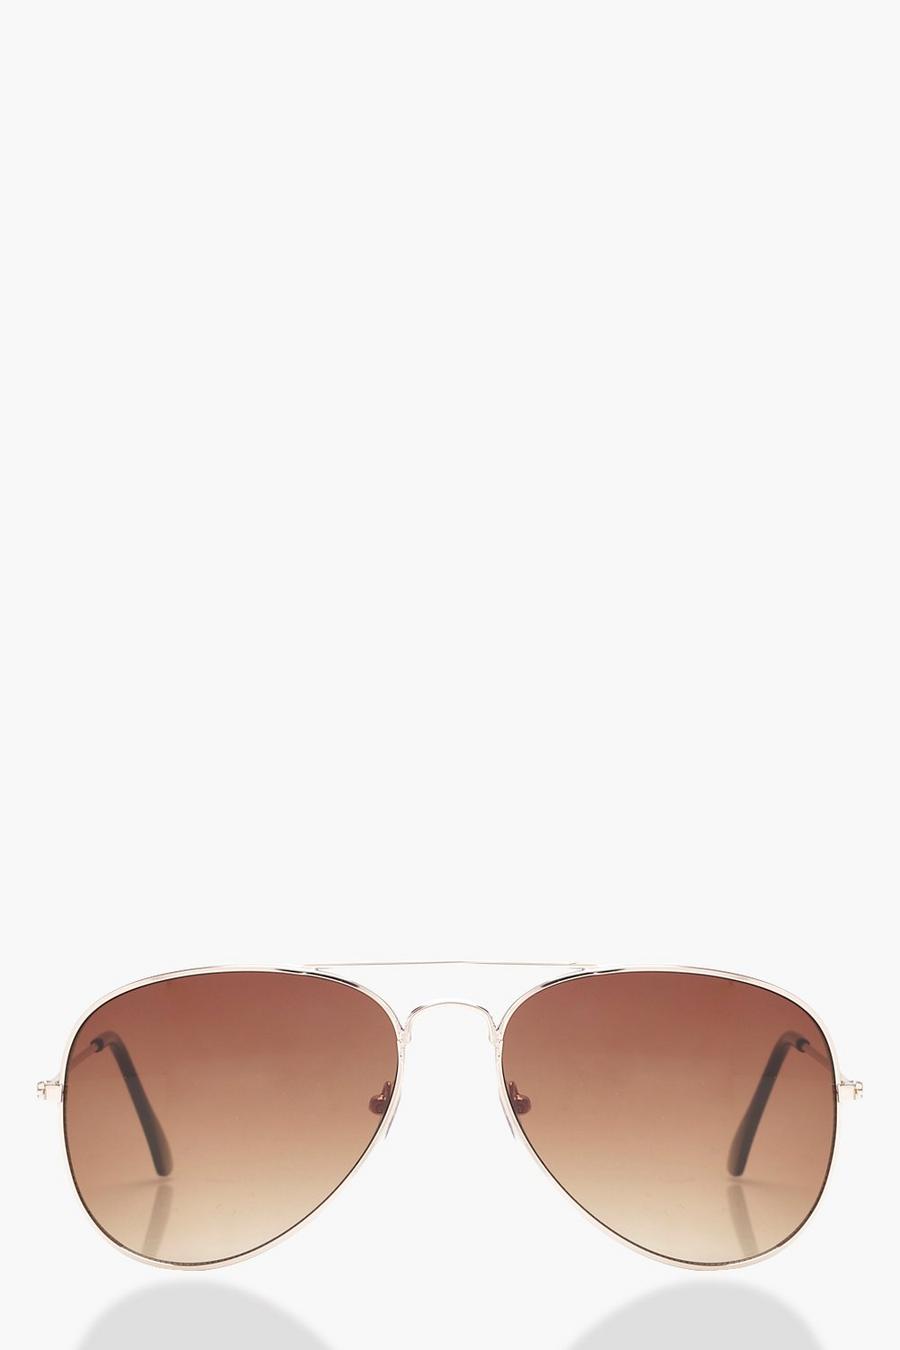 Gafas de sol estilo aviador con lentes marrones, Marrón brown